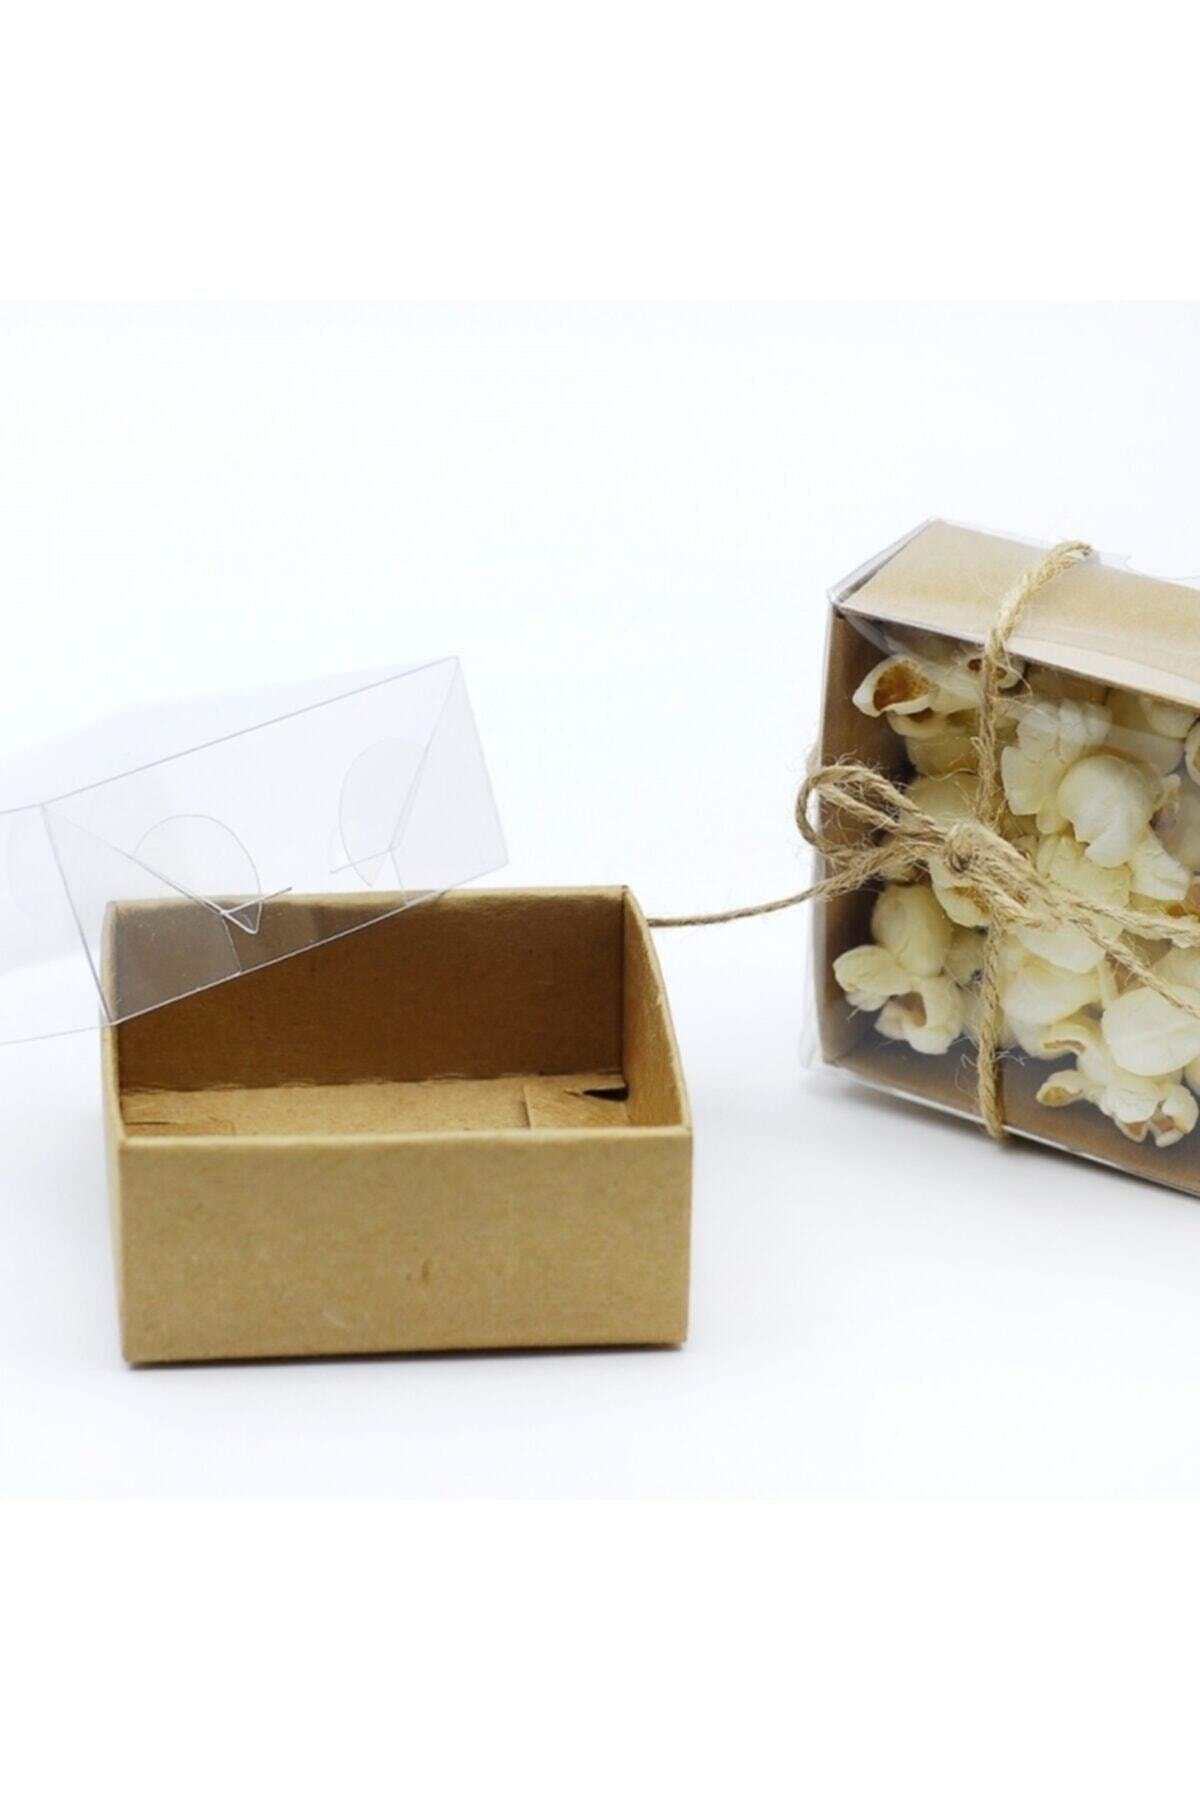 Aker Hediyelik Tasarım Kağıt Kutucuk Minik Kutular 7x7x3 Kahverengi Natürel 50adet Asetat Kapaklı Karton Kraft Kutu